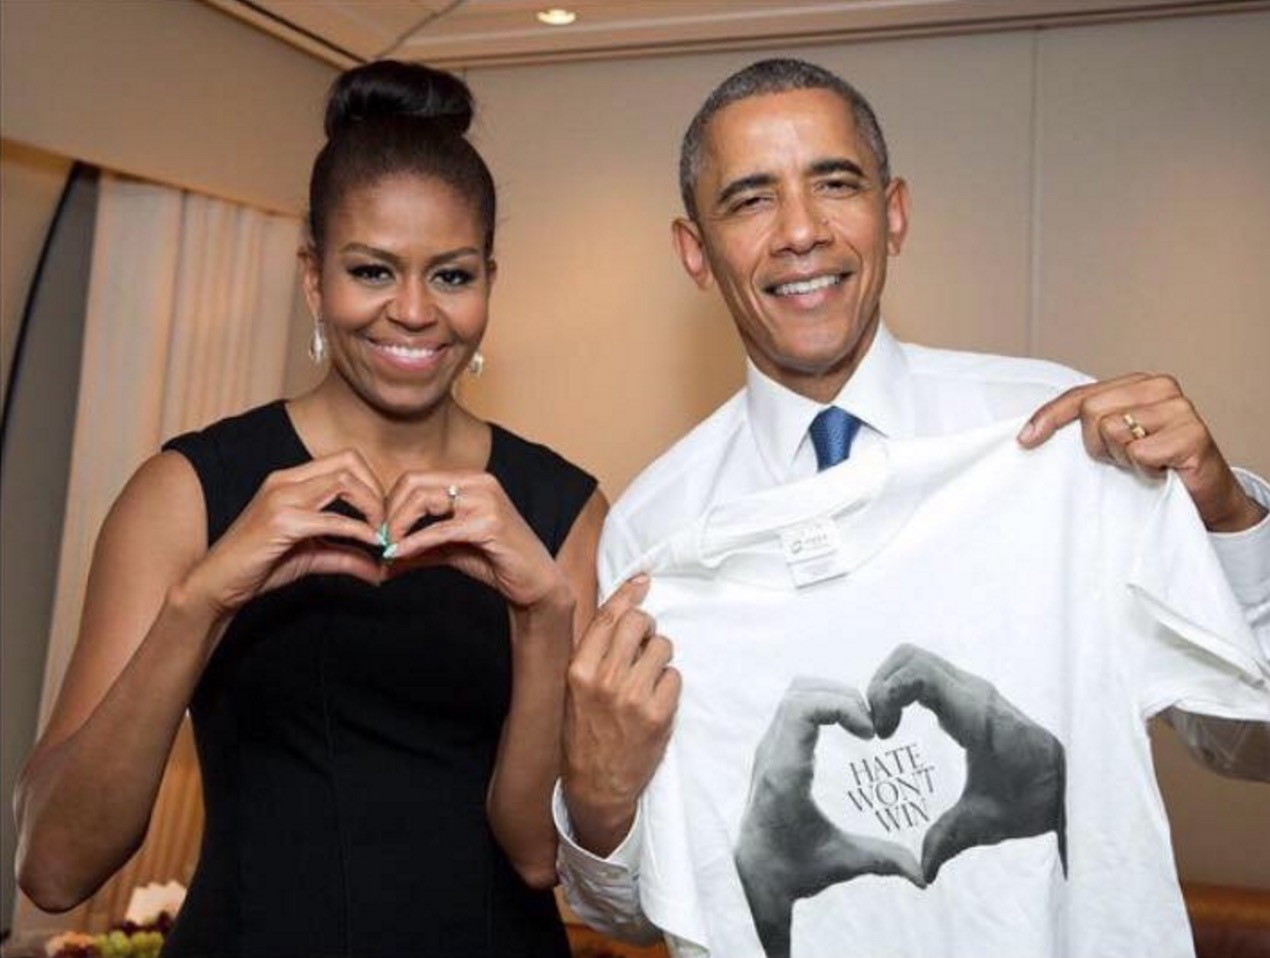 Alana is een campagne gestart om liefde te verspreiden in plaats van haat. Obama ondersteunt dit initiatief actief.